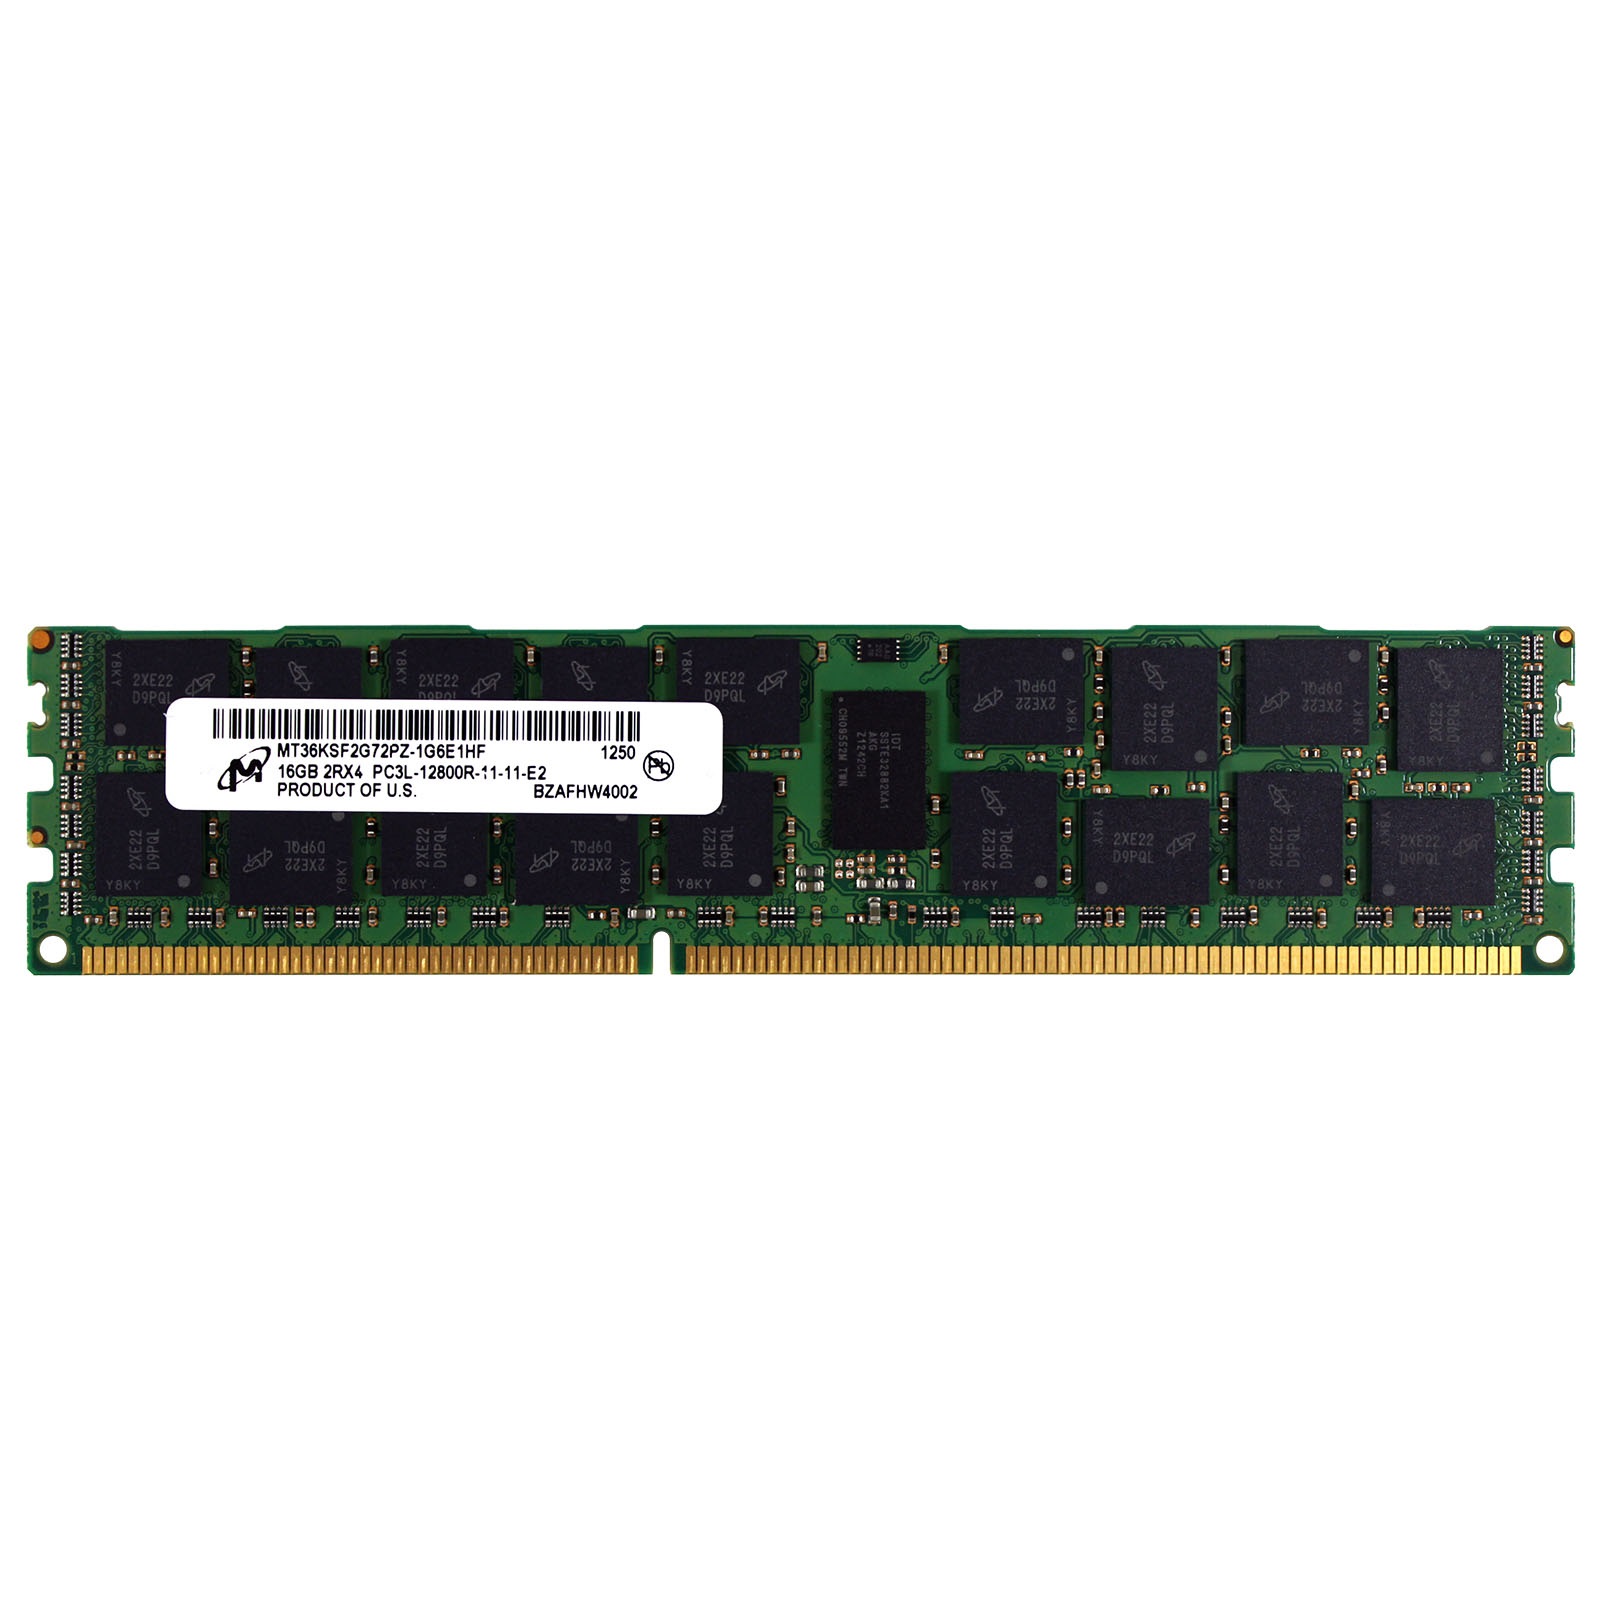 رم سرور DDR3 تک کاناله 1600 مگاهرتز CL11 میکرون مدل MT36KSF2G72PZ-1G6E1HF ظرفیت 16 گیگابایت